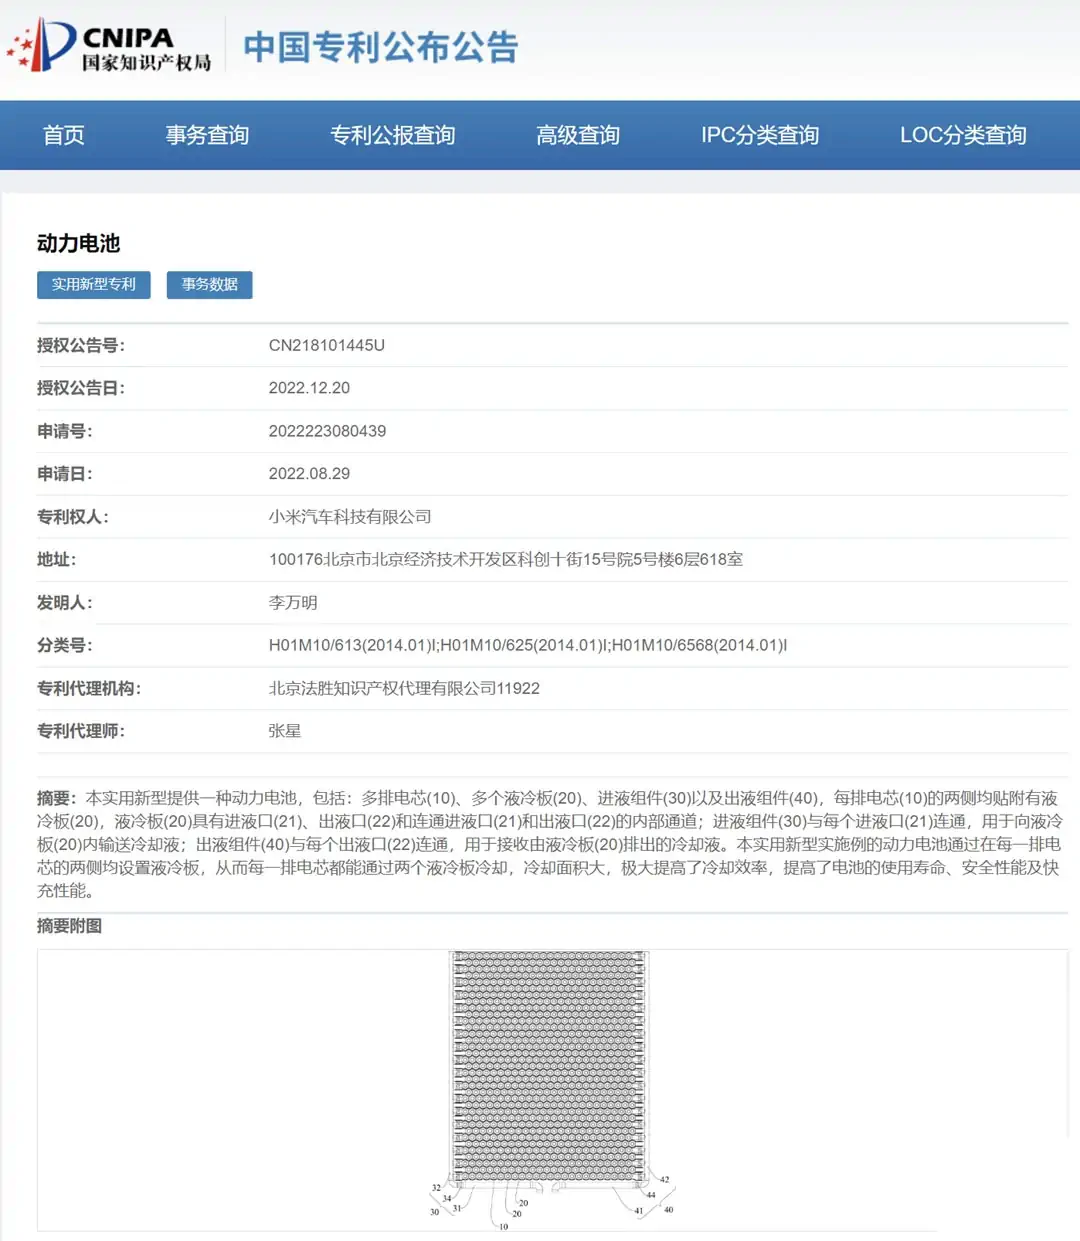 Engedélyezték a Xiaomi autó akkumulátor szabadalmát